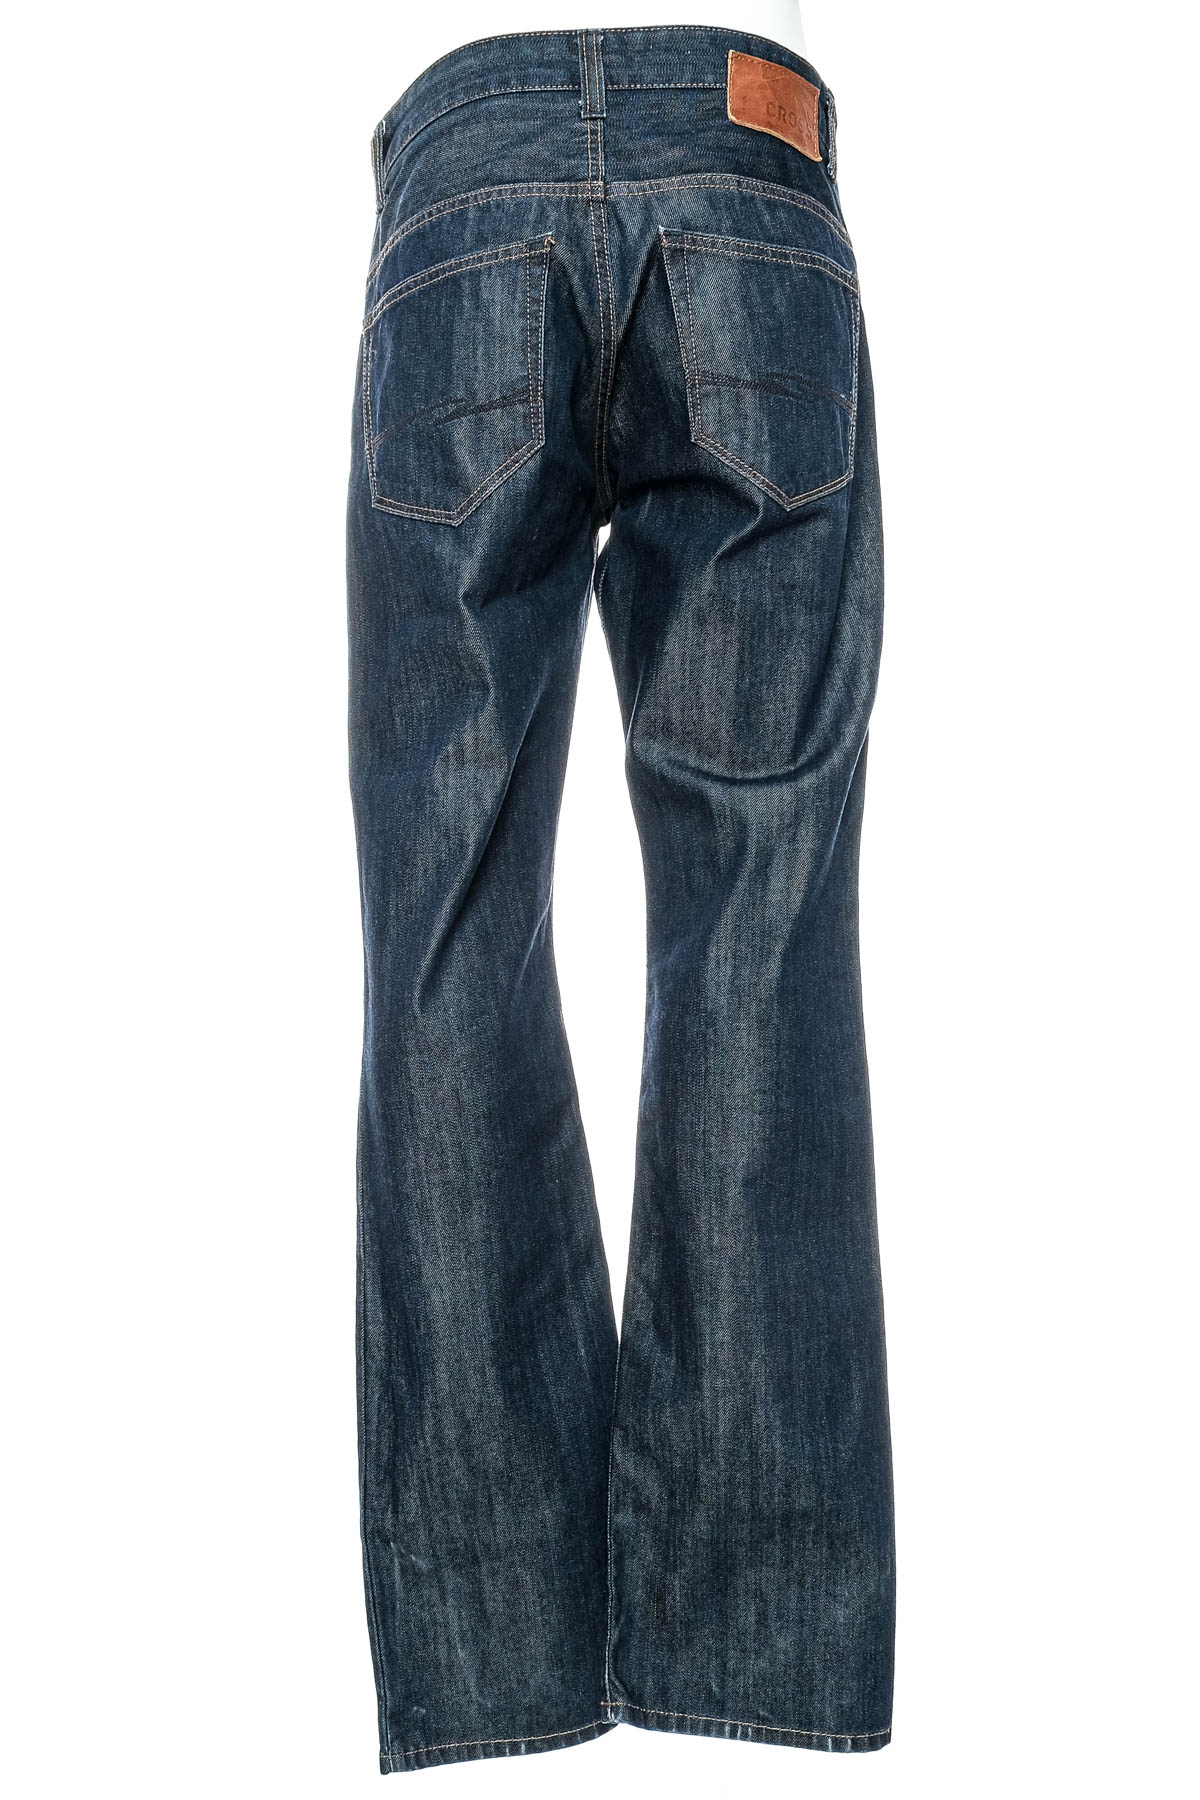 Ανδρικά τζιν - Cross Jeans - 1